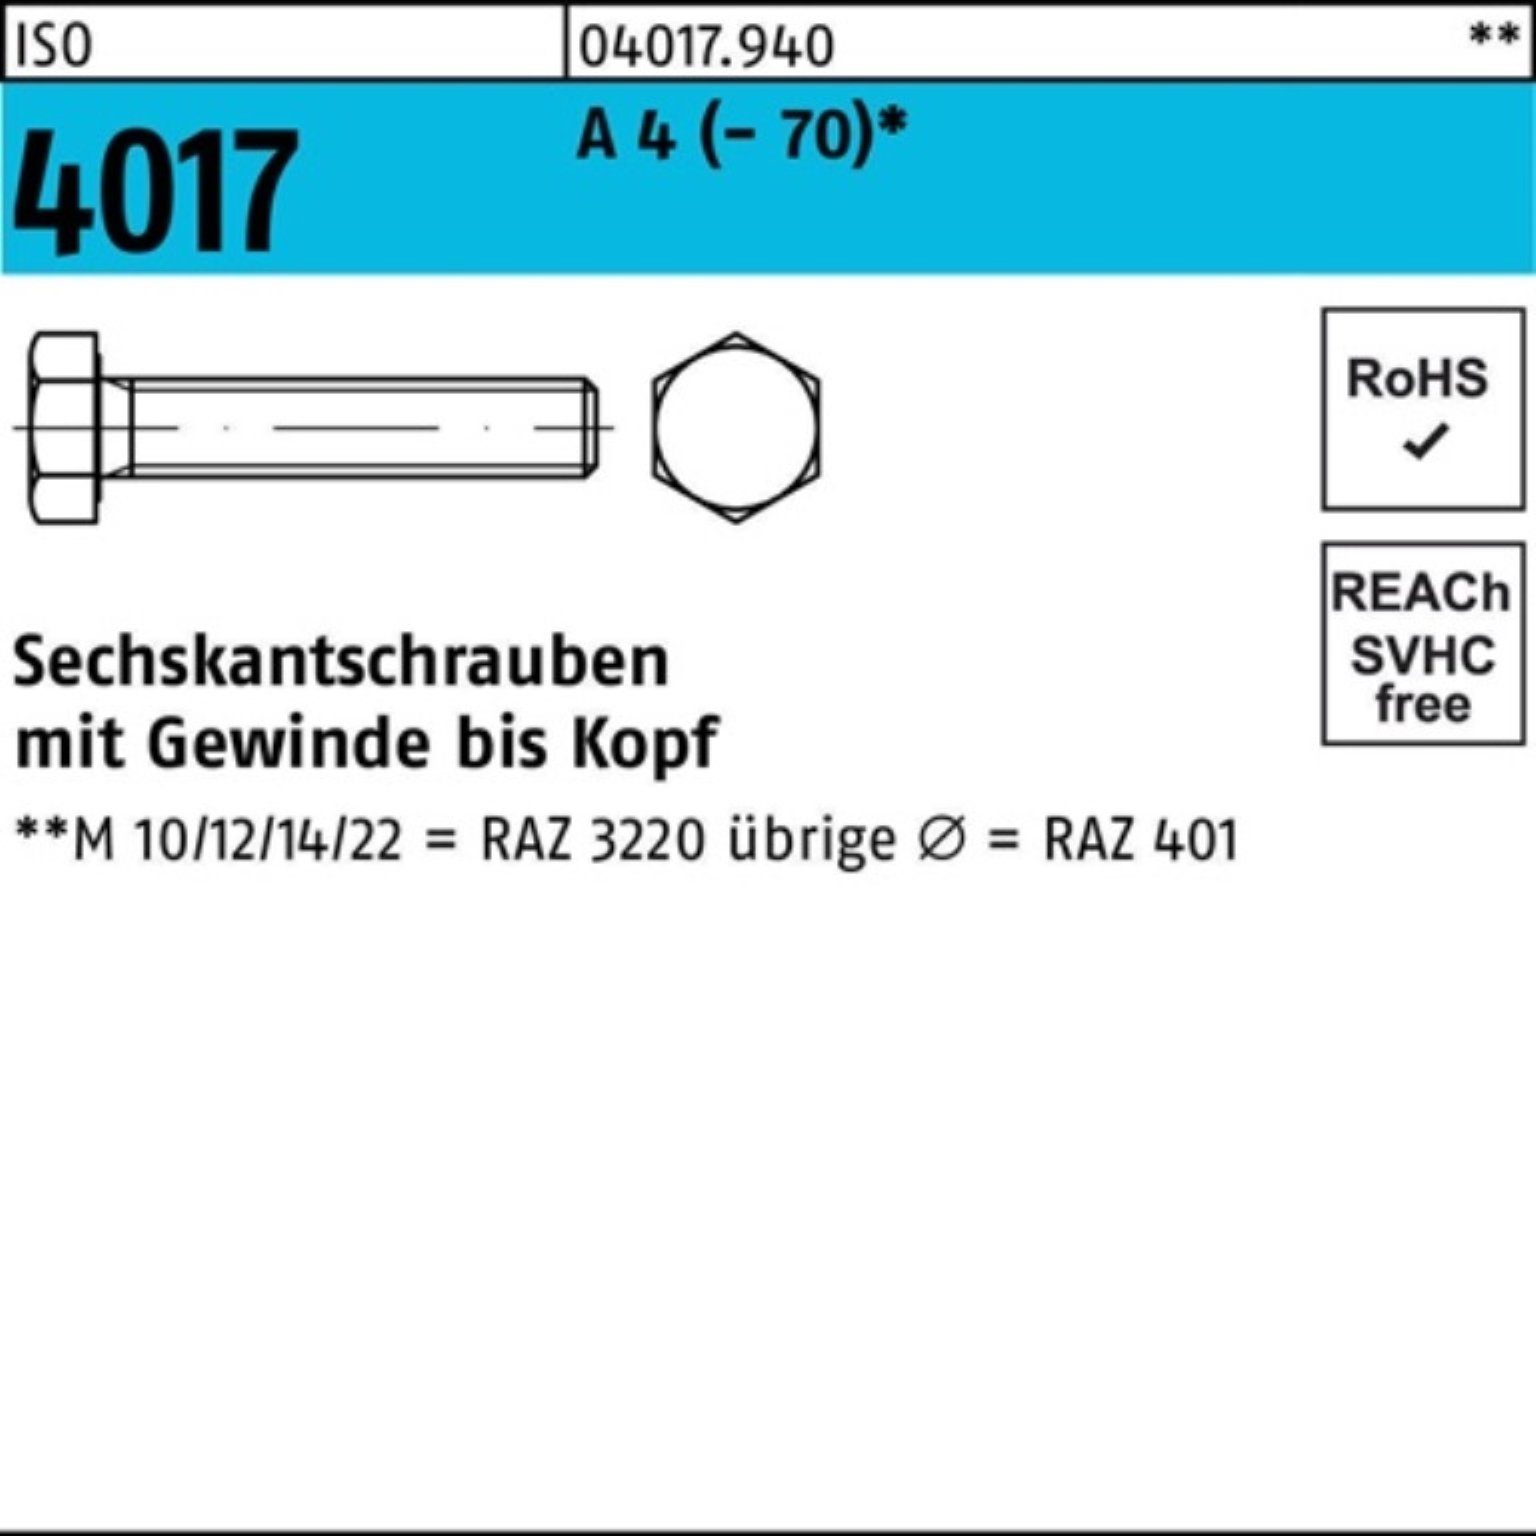 Bufab Sechskantschraube 100er Pack Sechskantschraube ISO 4017 VG M16x 30 A 4 (70) 50 Stück